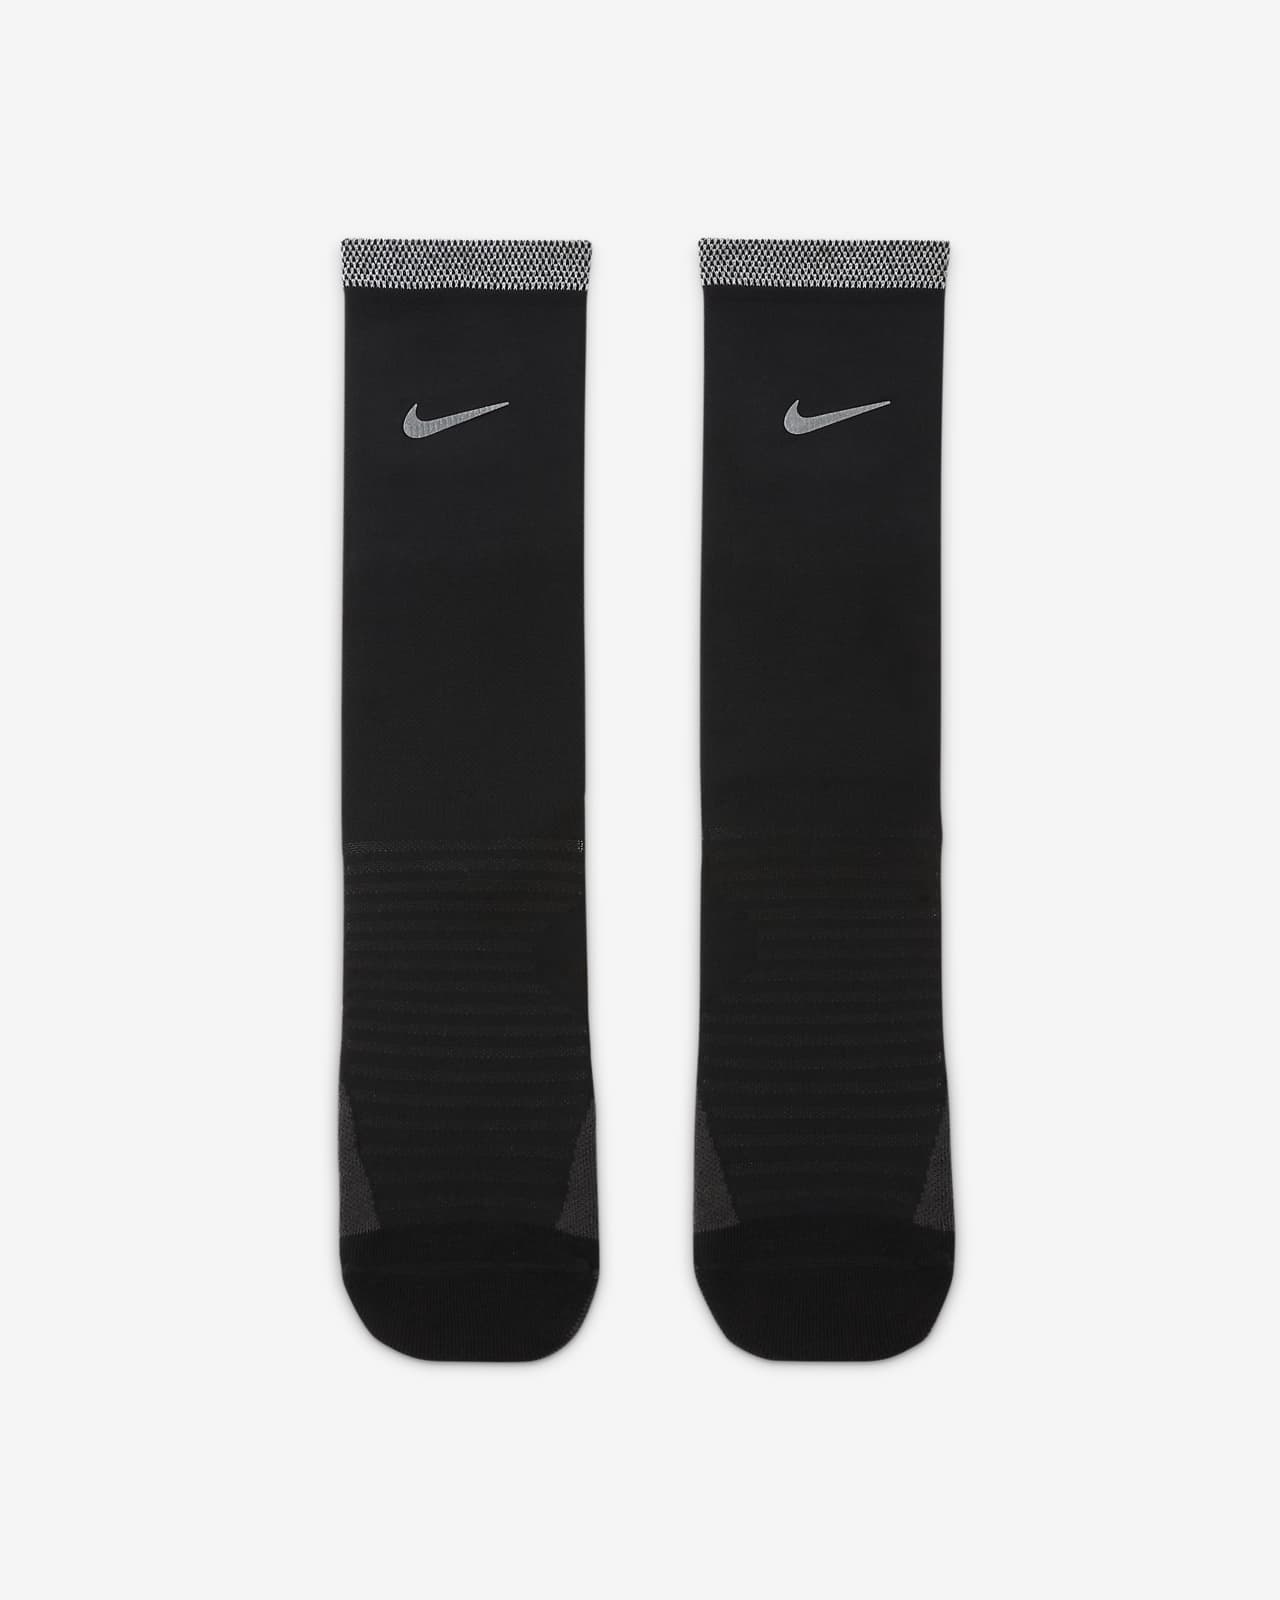 Nike Spark Crew Socks.